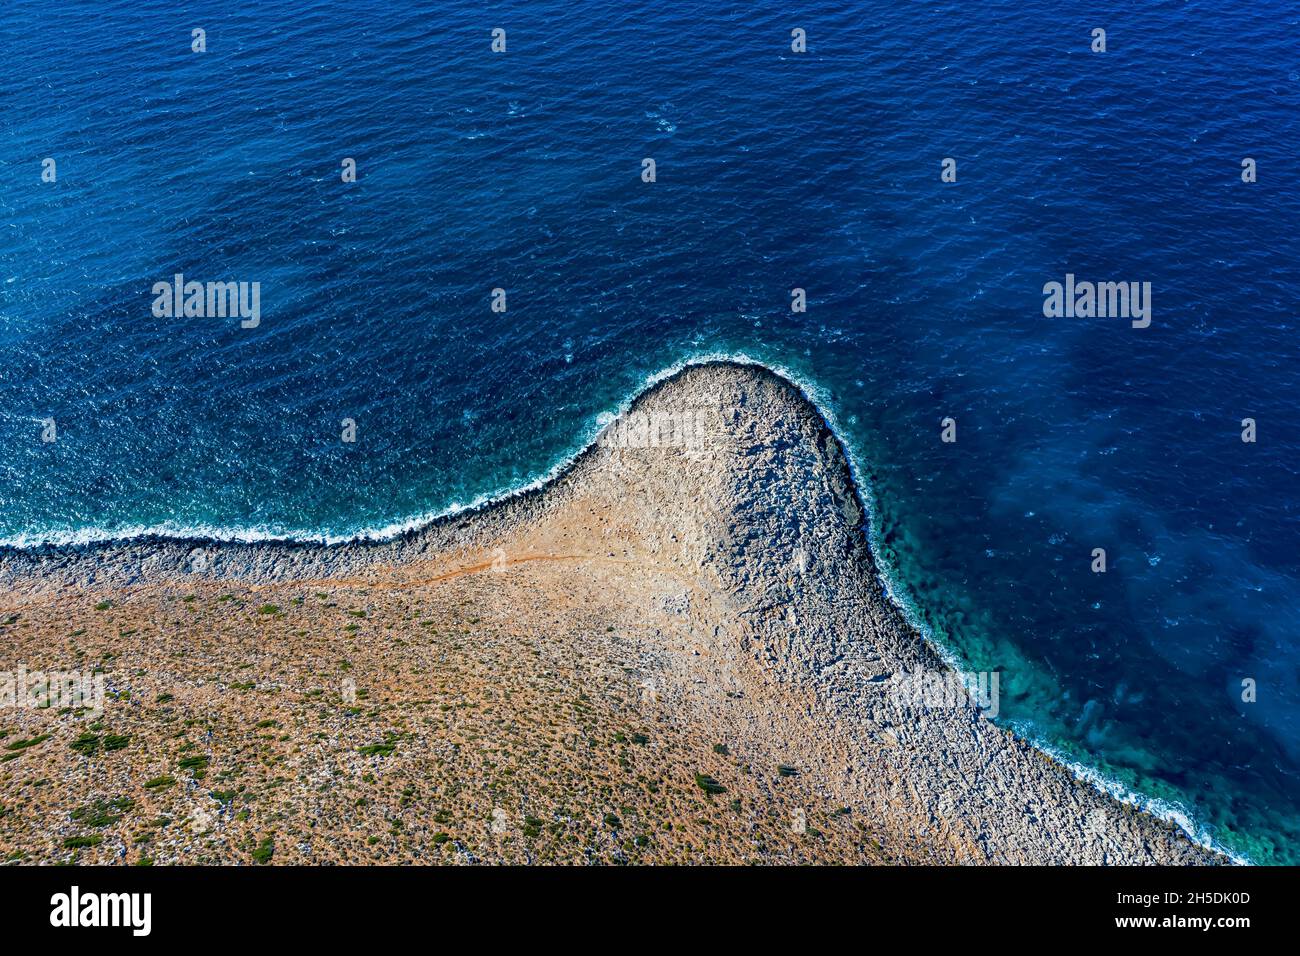 Kreta aus der Luft | Schöne Landschaften auf Kreta von oben gefilmt | Crete from above with Drone Stock Photo